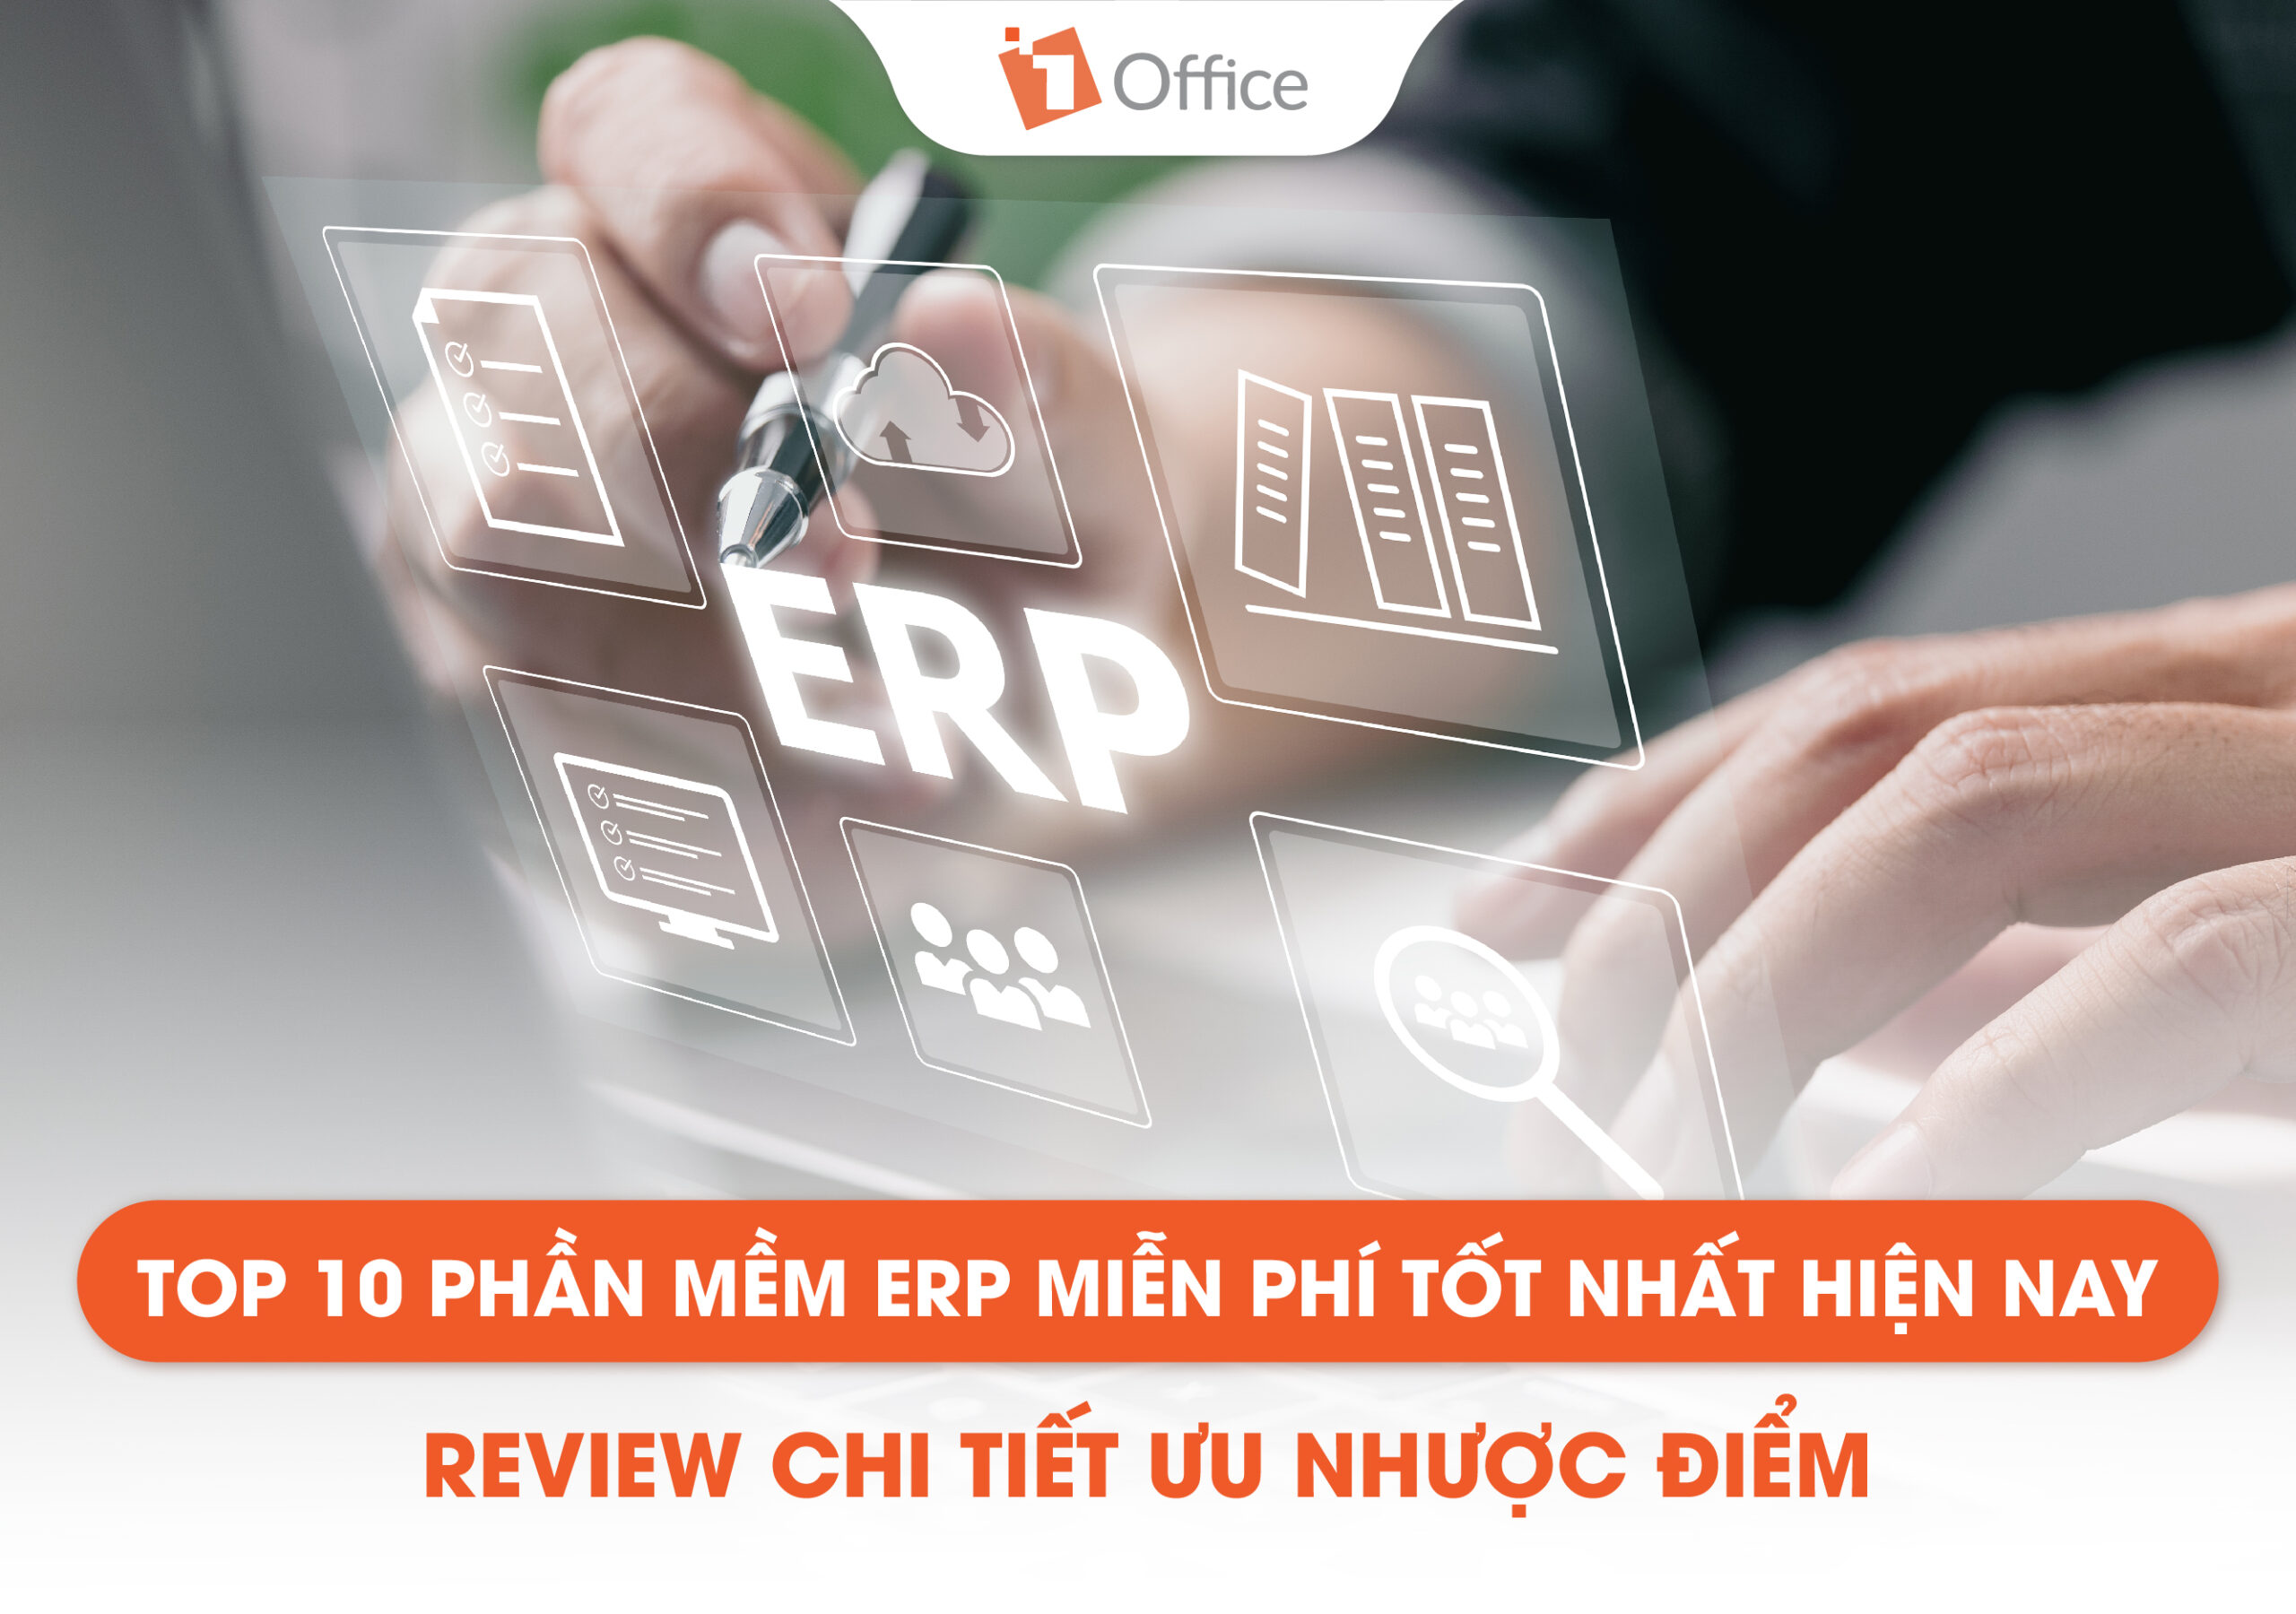 TOP 10 phần mềm ERP miễn phí tốt nhất hiện nay – Review chi tiết ưu nhược điểm